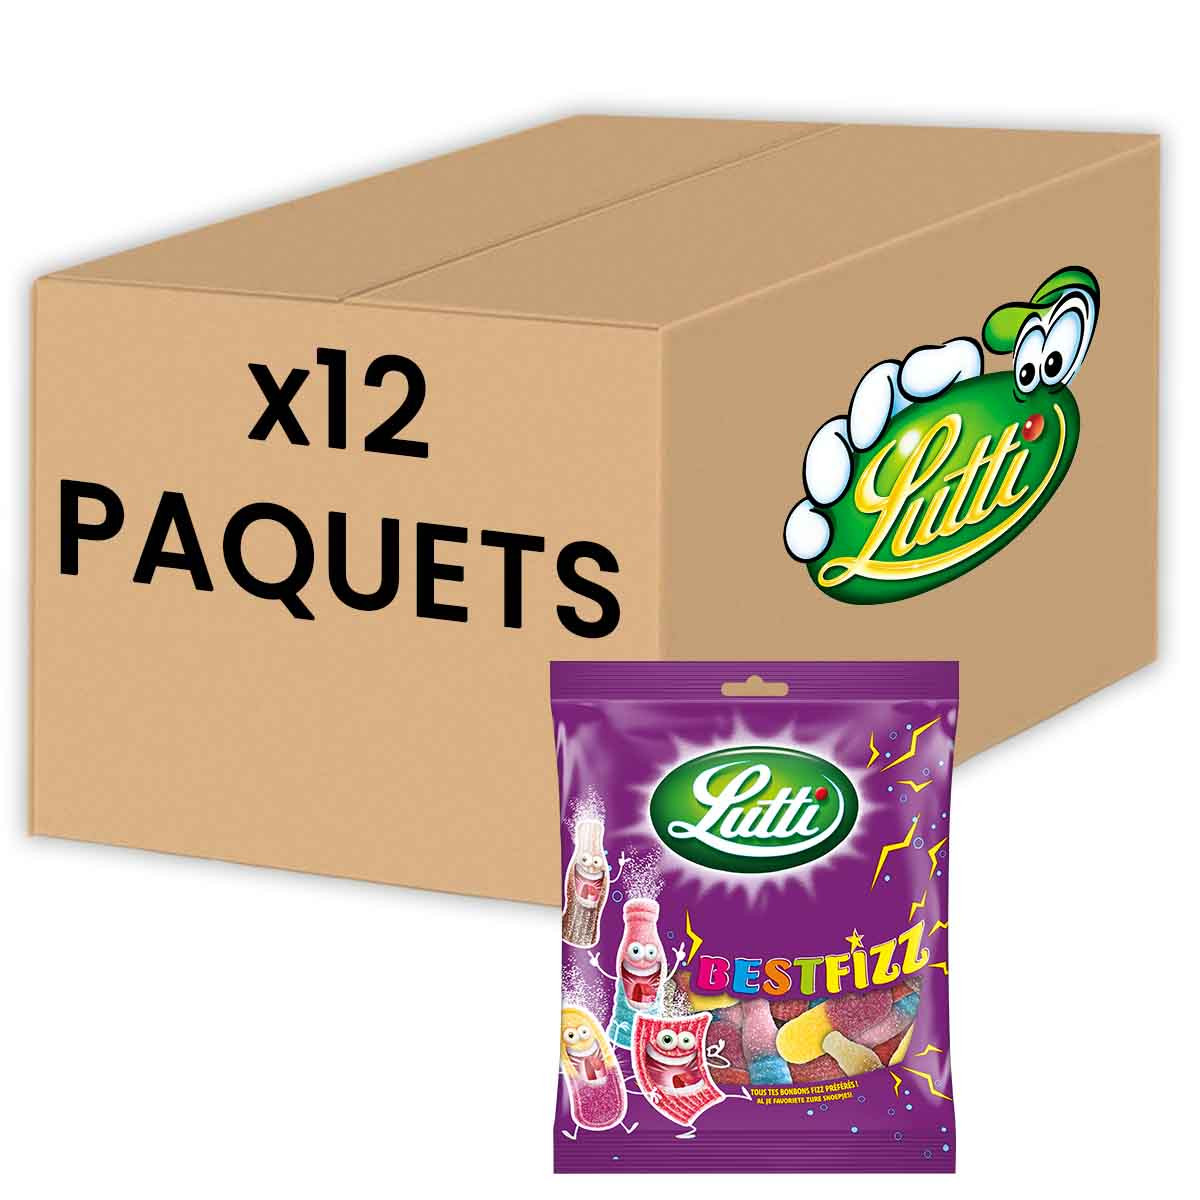 Lutti - Sachet de bonbons Best Fizz - 110 grammes